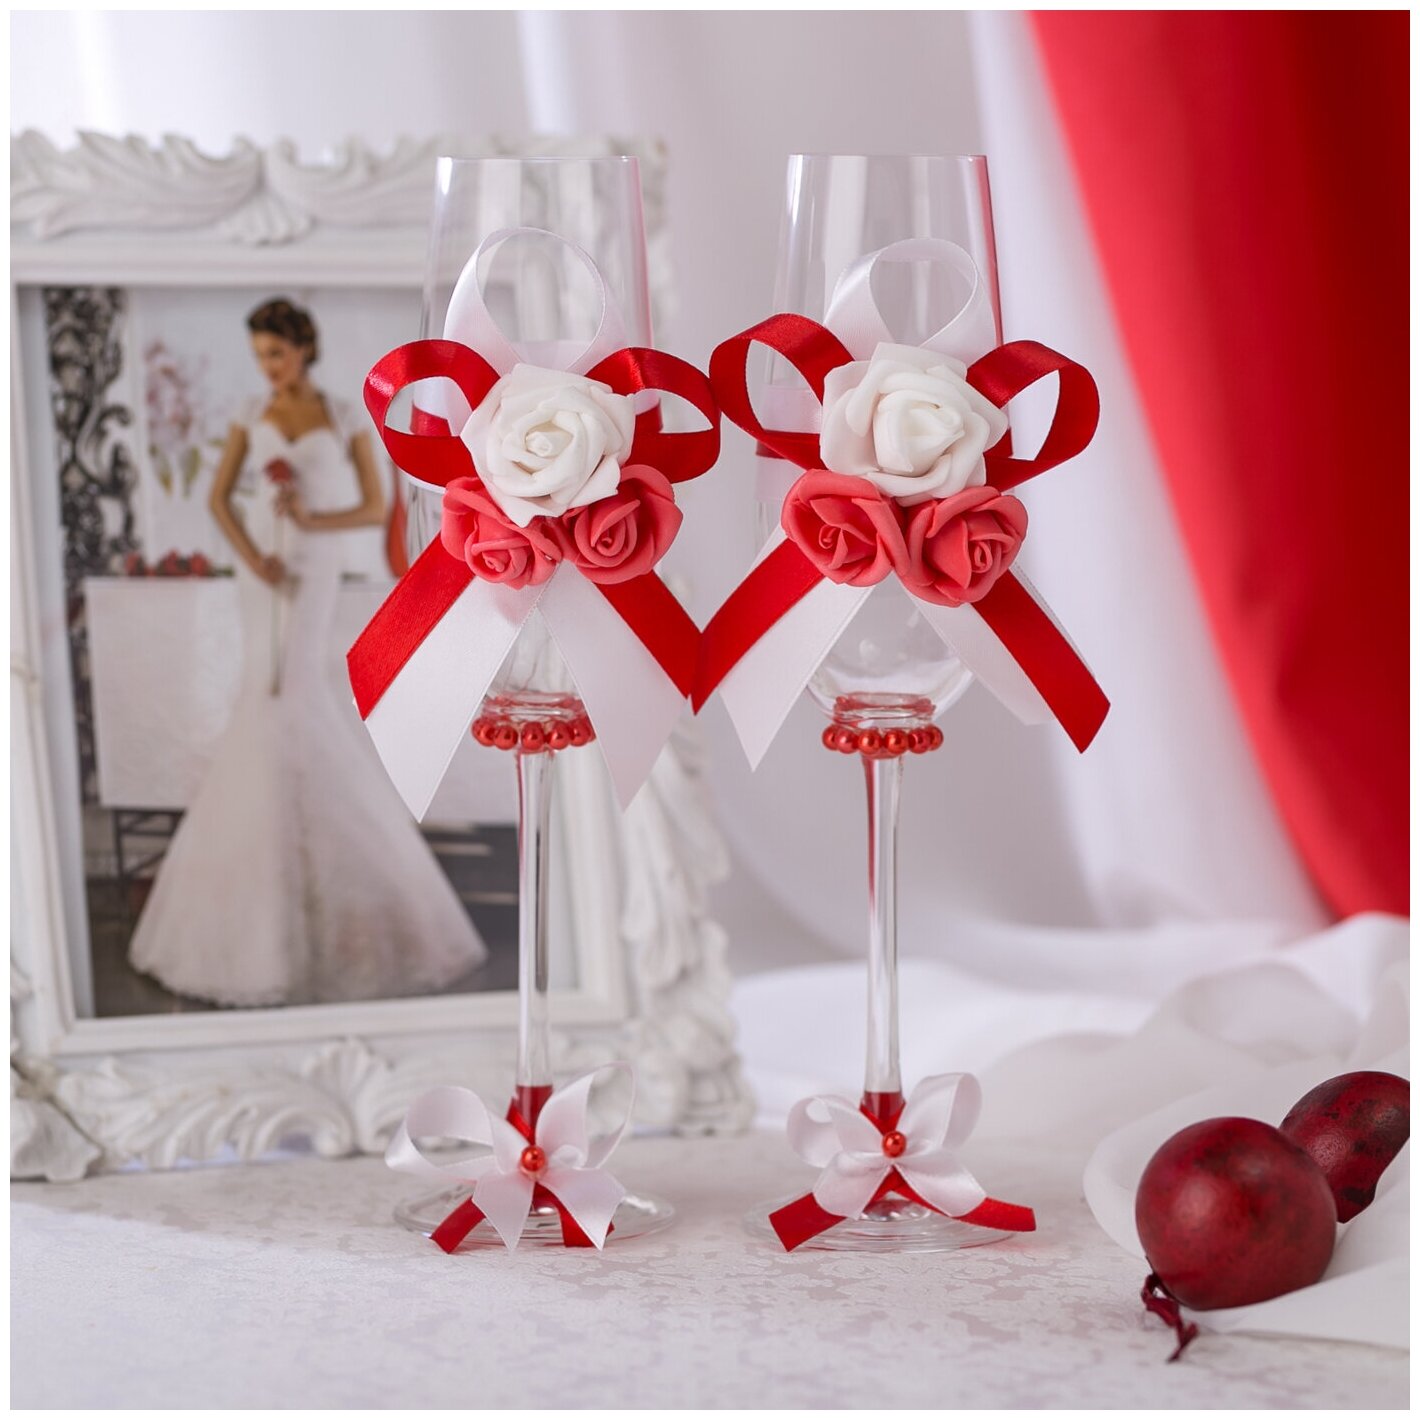 Свадебные бокалы для молодоженов "Красный стиль" с латексными розами и атласными лентами в алых и белых тонах ручной работы